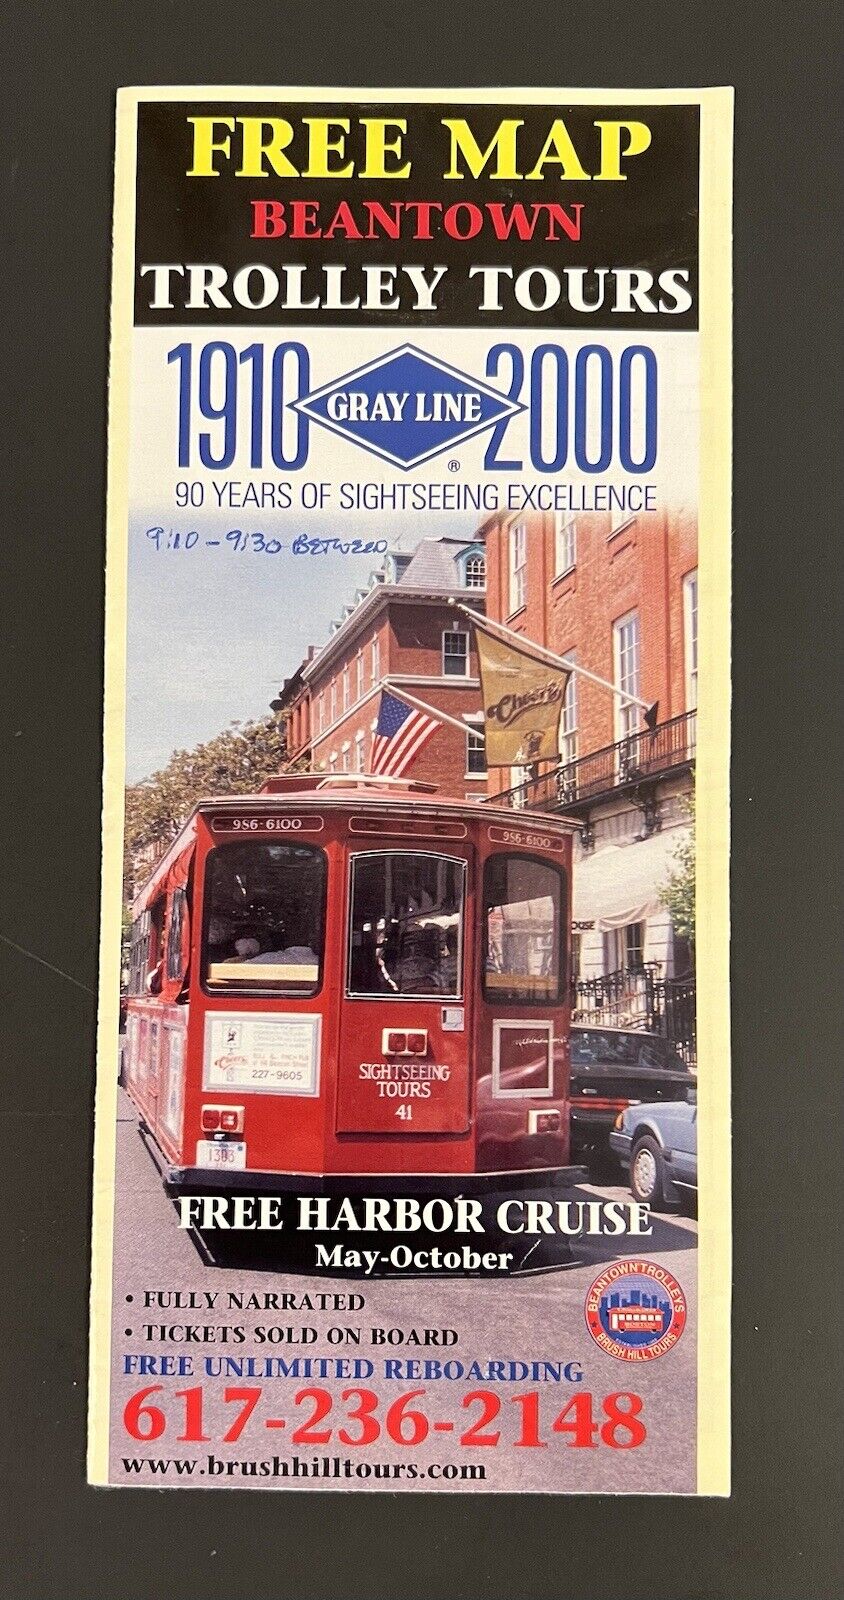 VTG 2000 Boston Travel Ephemera 1910-2000 Gray Line Beantown Trolley Tours 